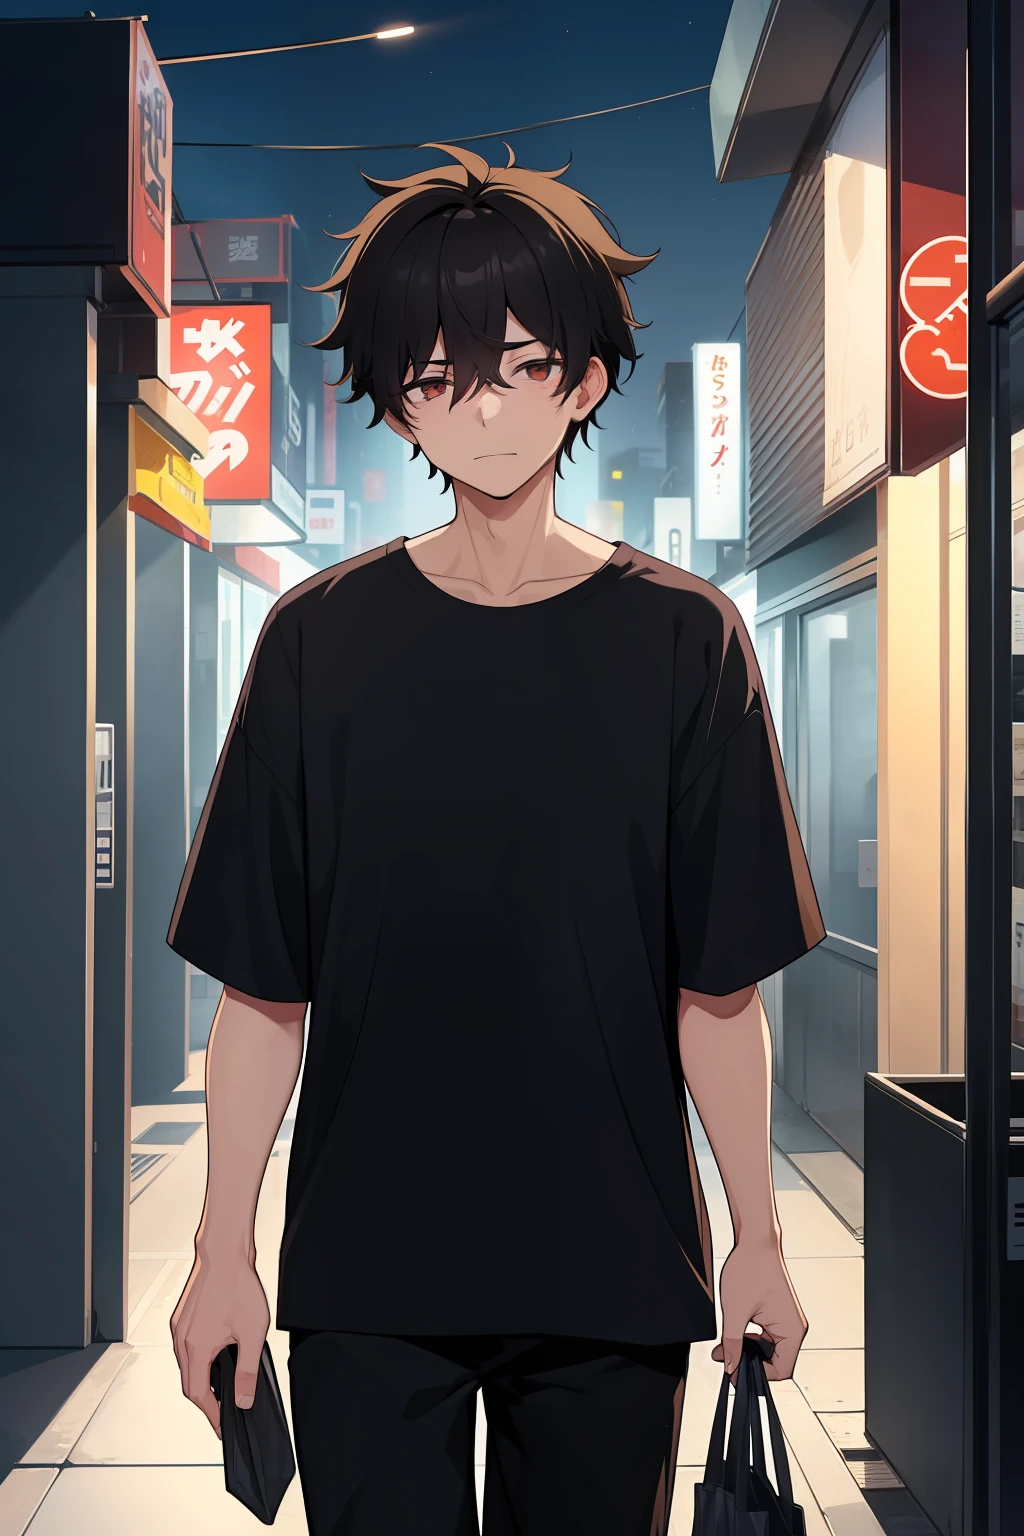 ذكر واحد, سن 20, مرهق, شعر أسود فوضوي, قميص اسود, يحمل حقيبة متجر صغير, المشي في منطقة حضرية منعزلة ليلاً